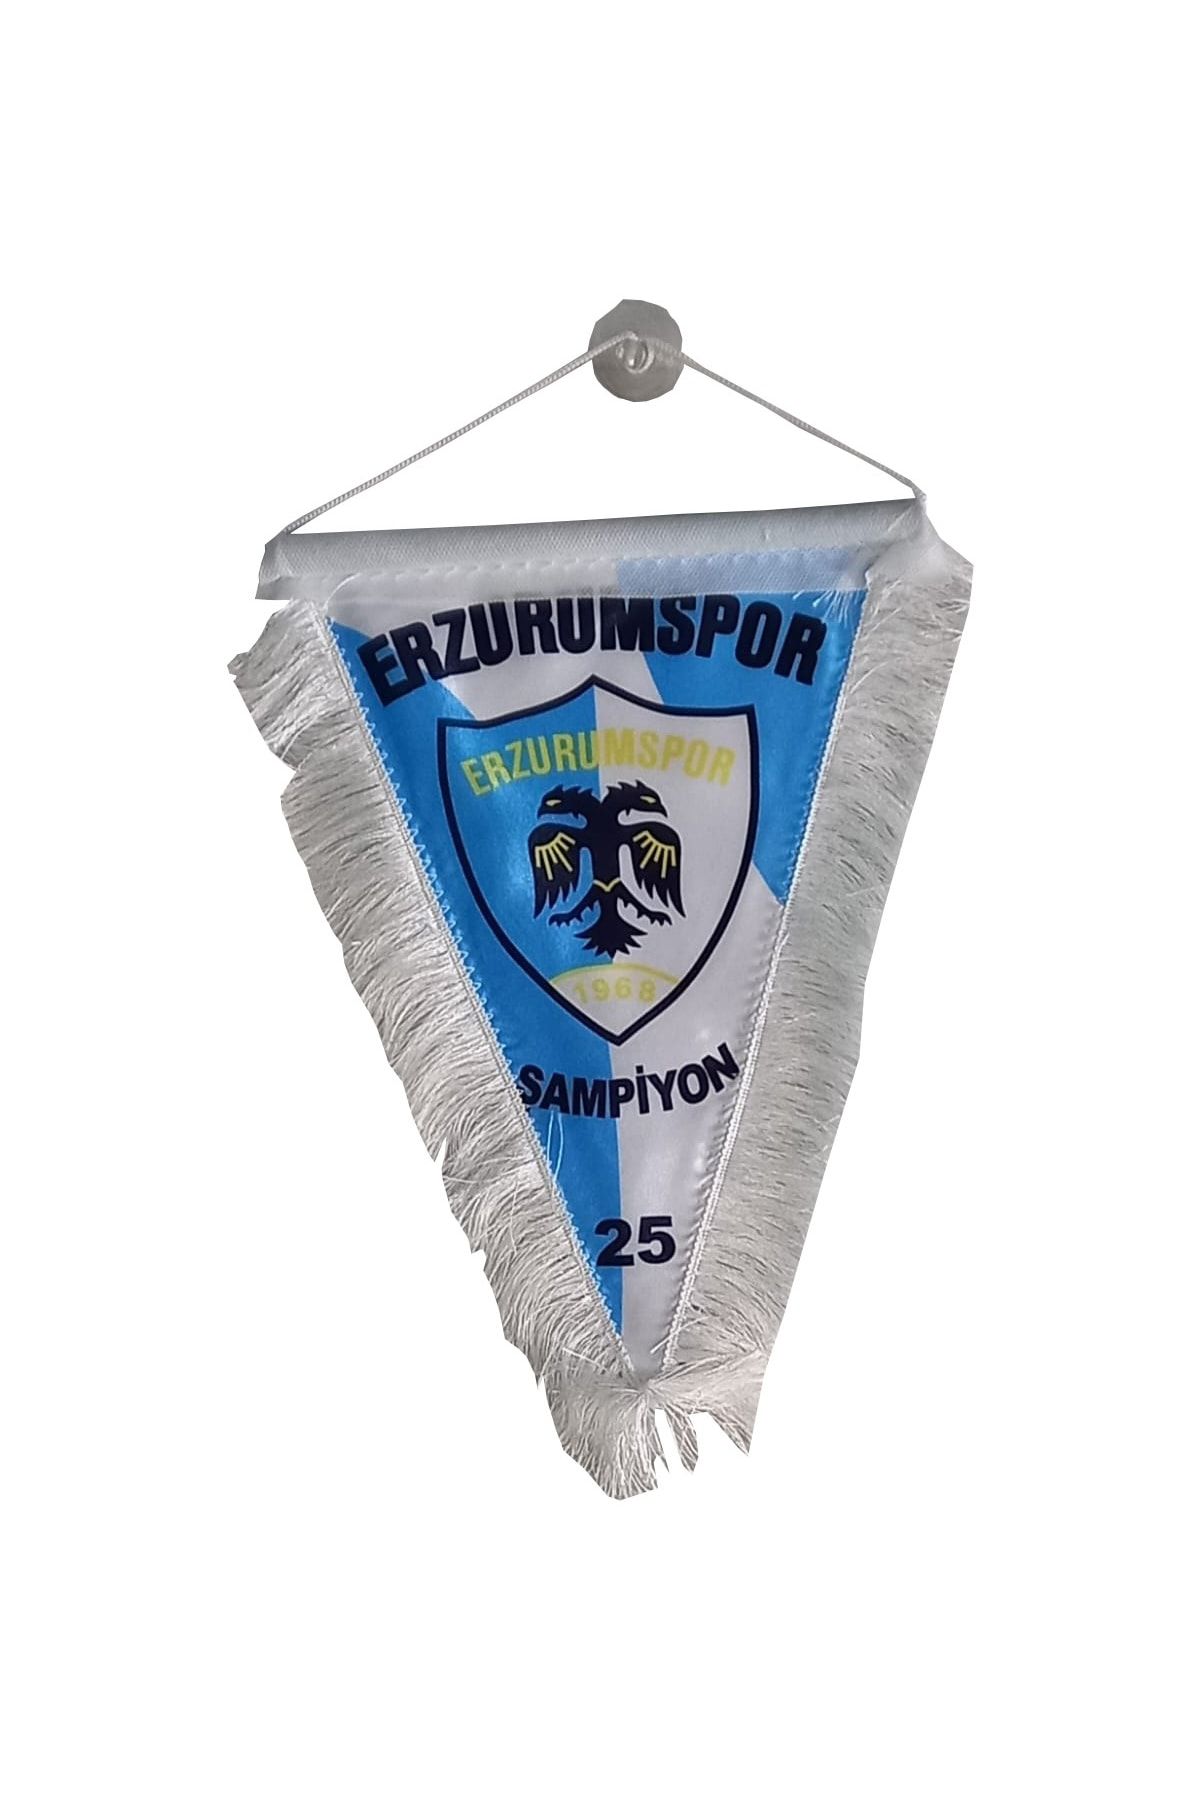 Erzurum Şampiyon Erzurumpor Üçgen Bayrak Erzurum Store C01